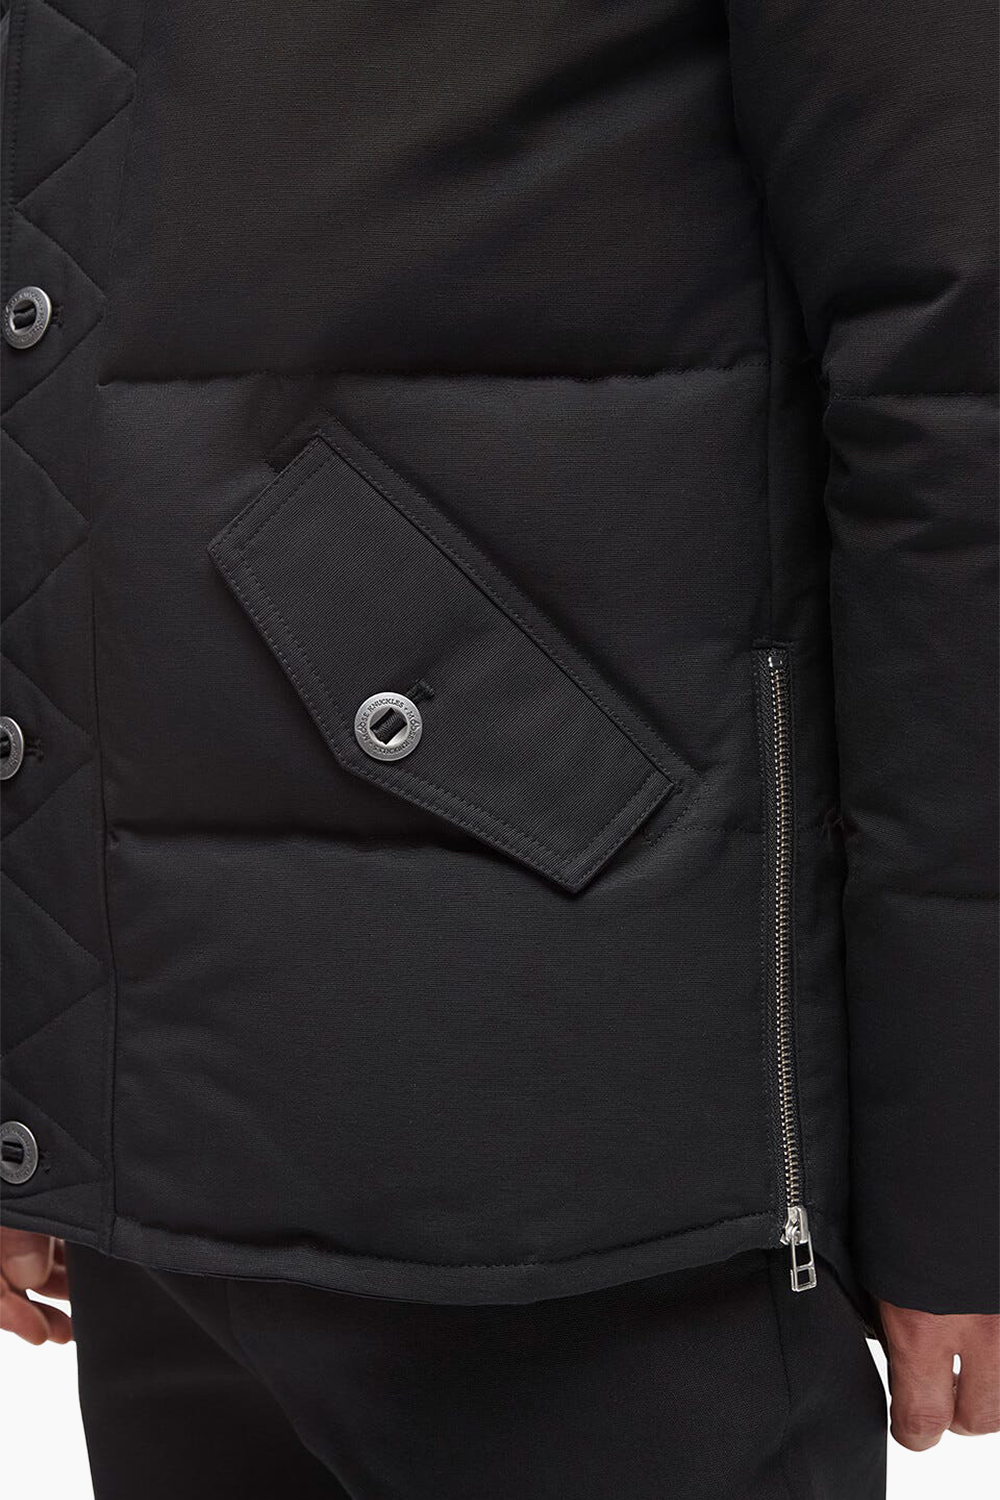 Moose Knuckles Men's 3Q Jacket in Black with Black Fur